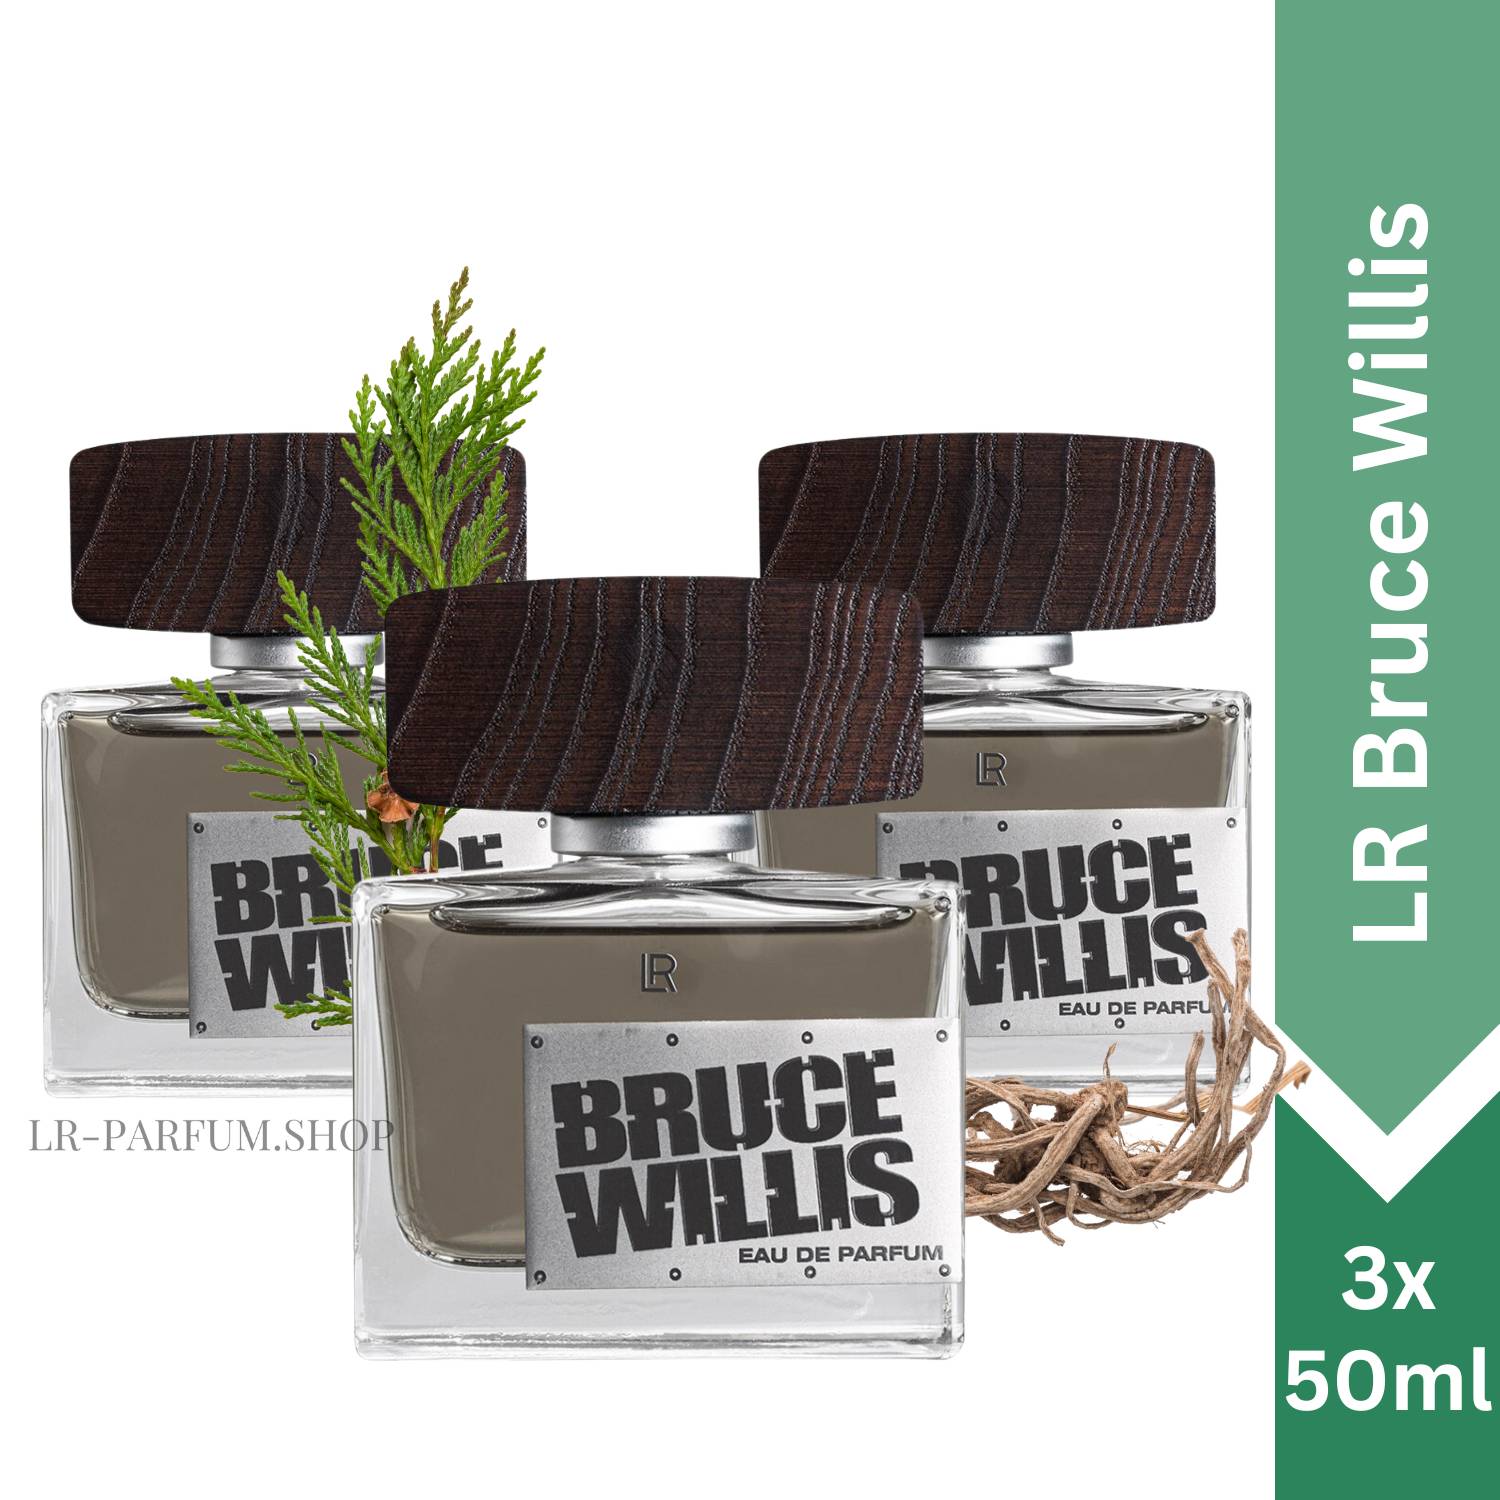 LR Bruce Willis - Eau de Parfum 50ml, 3er Pack (3x50ml) - LR-Parfum.shop